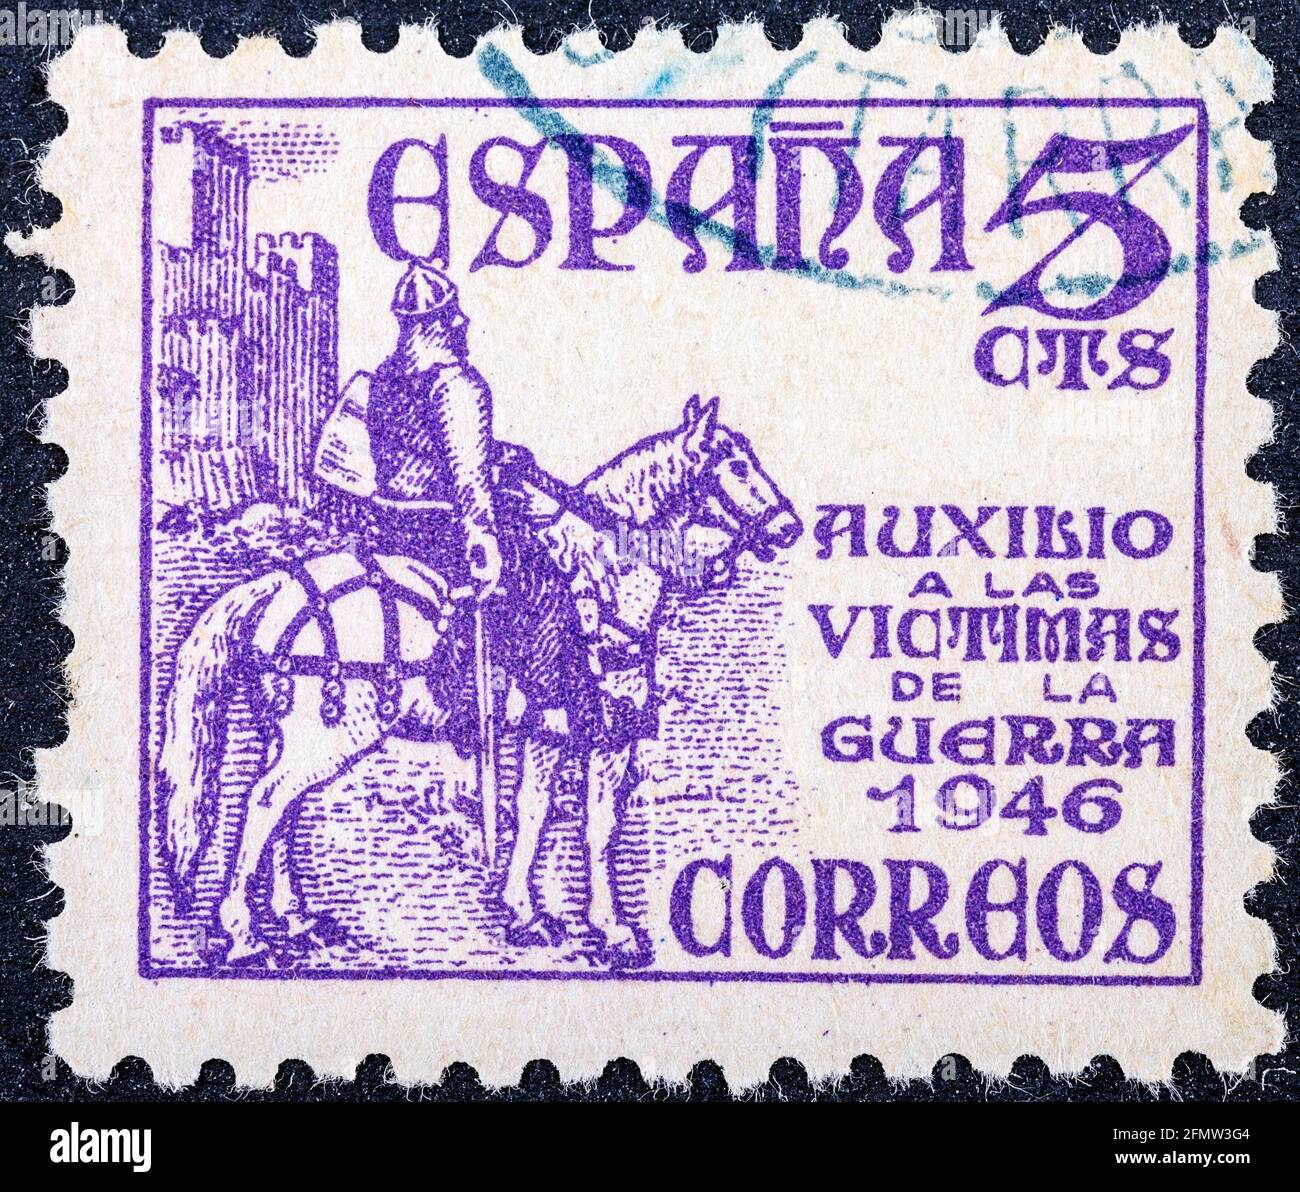 ESPAGNE - VERS 1949: Timbre imprimé par l'Espagne, montre le chevalier médiéval, vers 1949 Banque D'Images